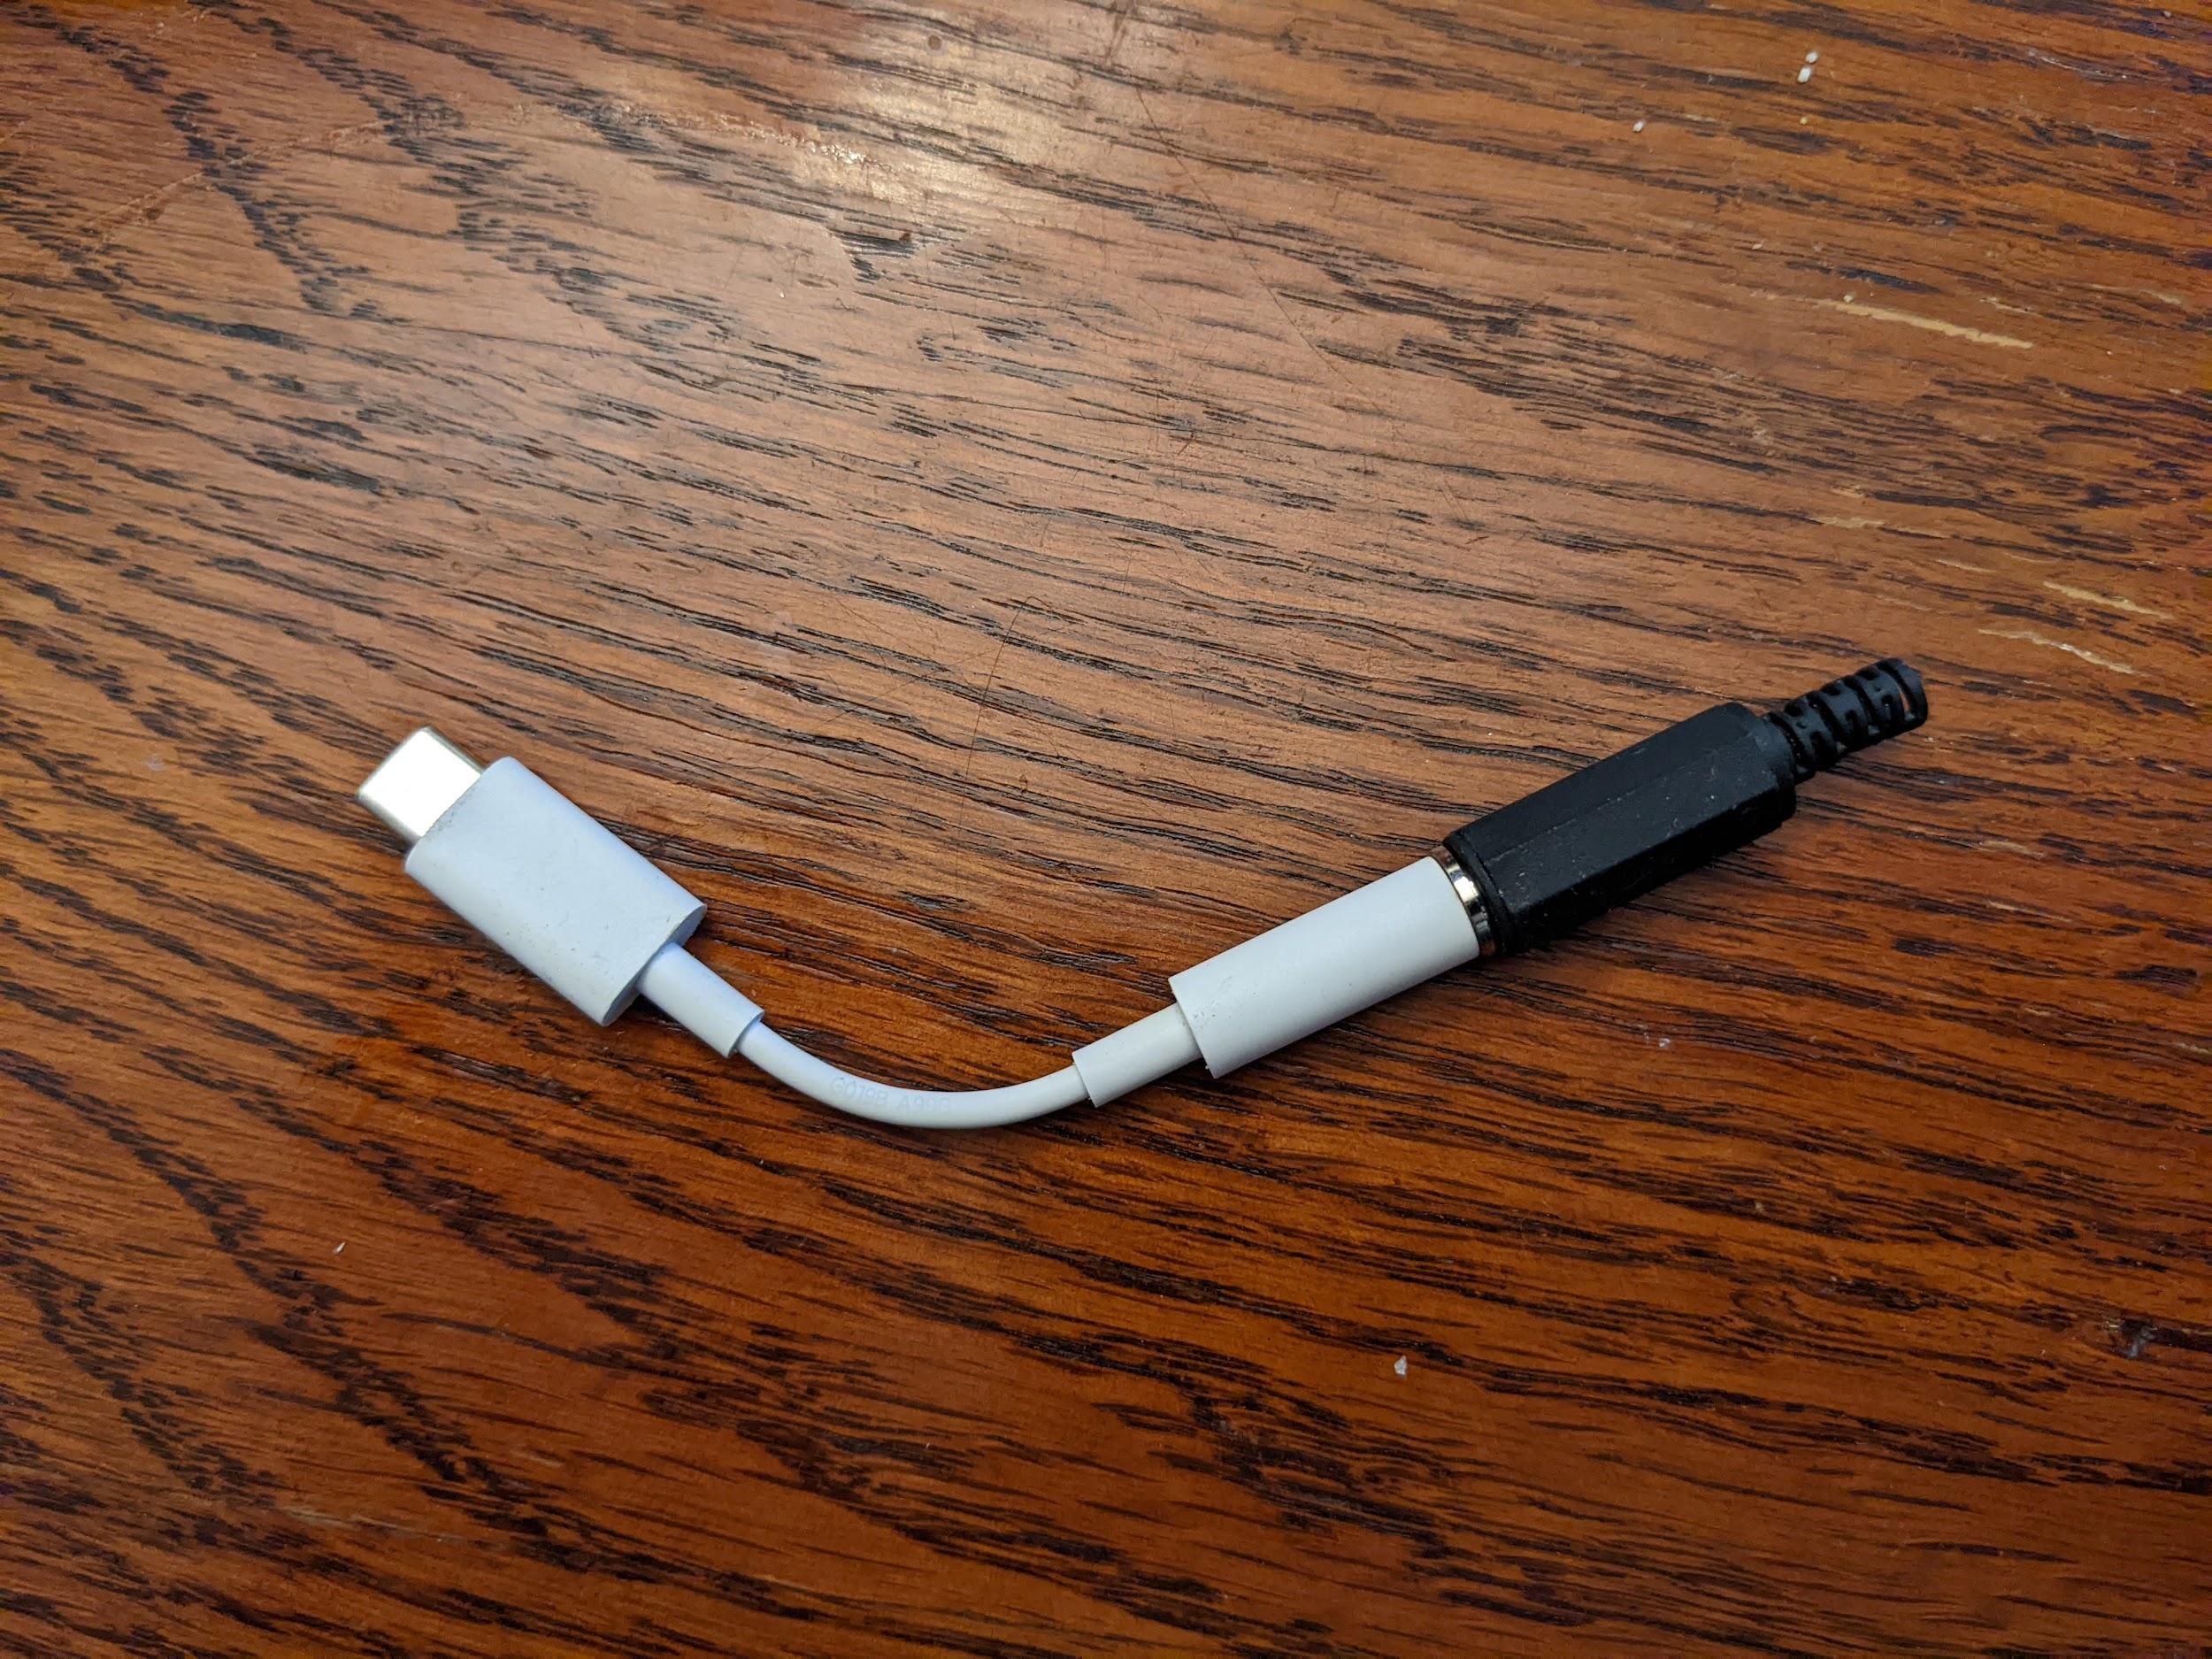 پلاگین حلقه بک صوتی به آداپتور USB به آنالوگ متصل است